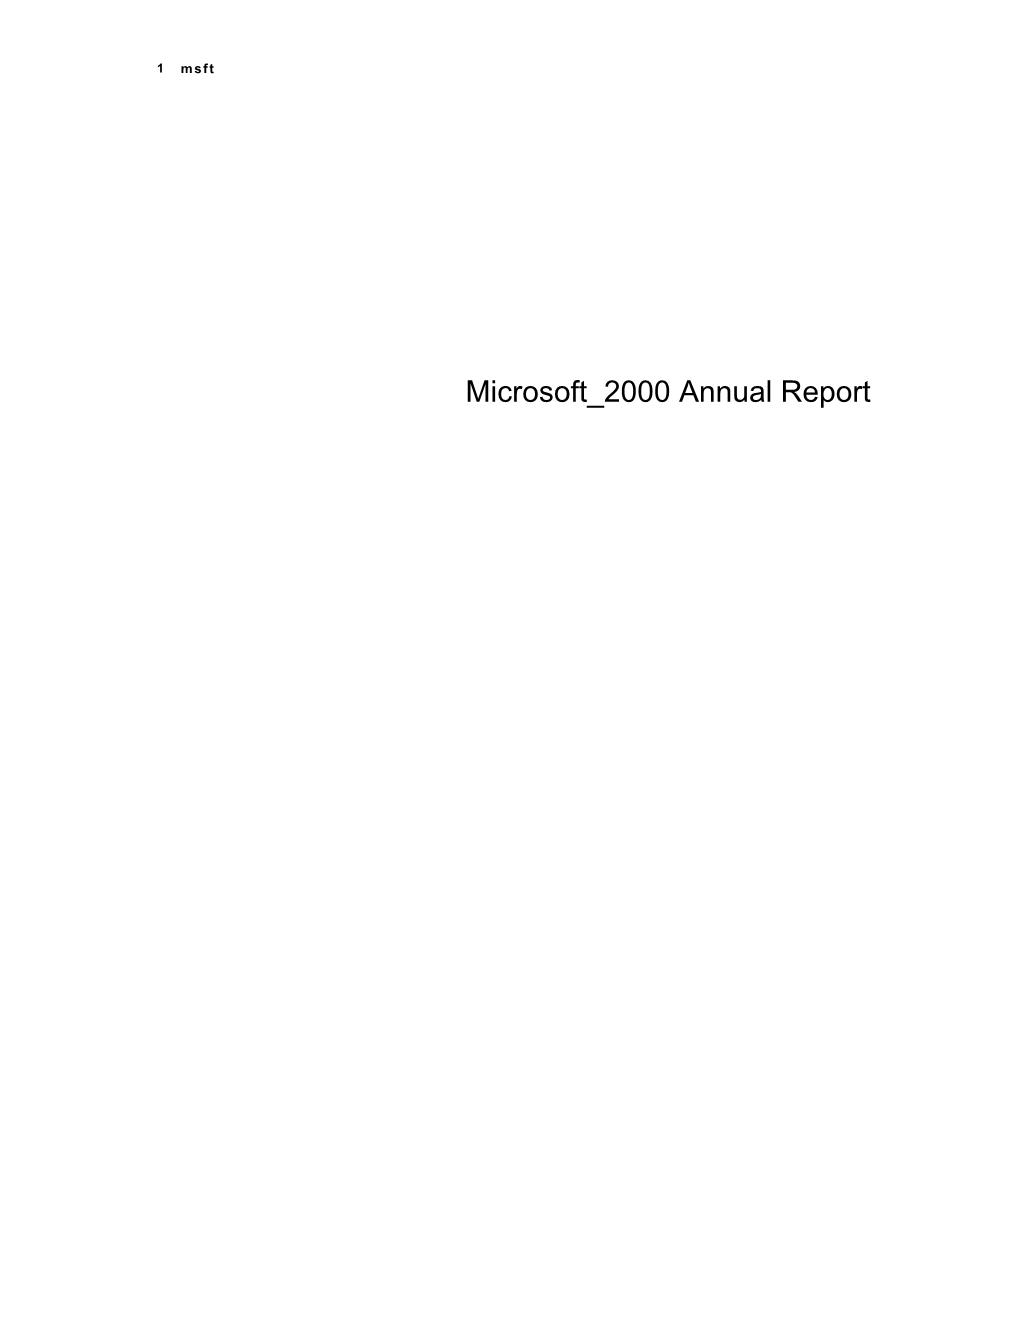 Microsoft 2000 Annual Report